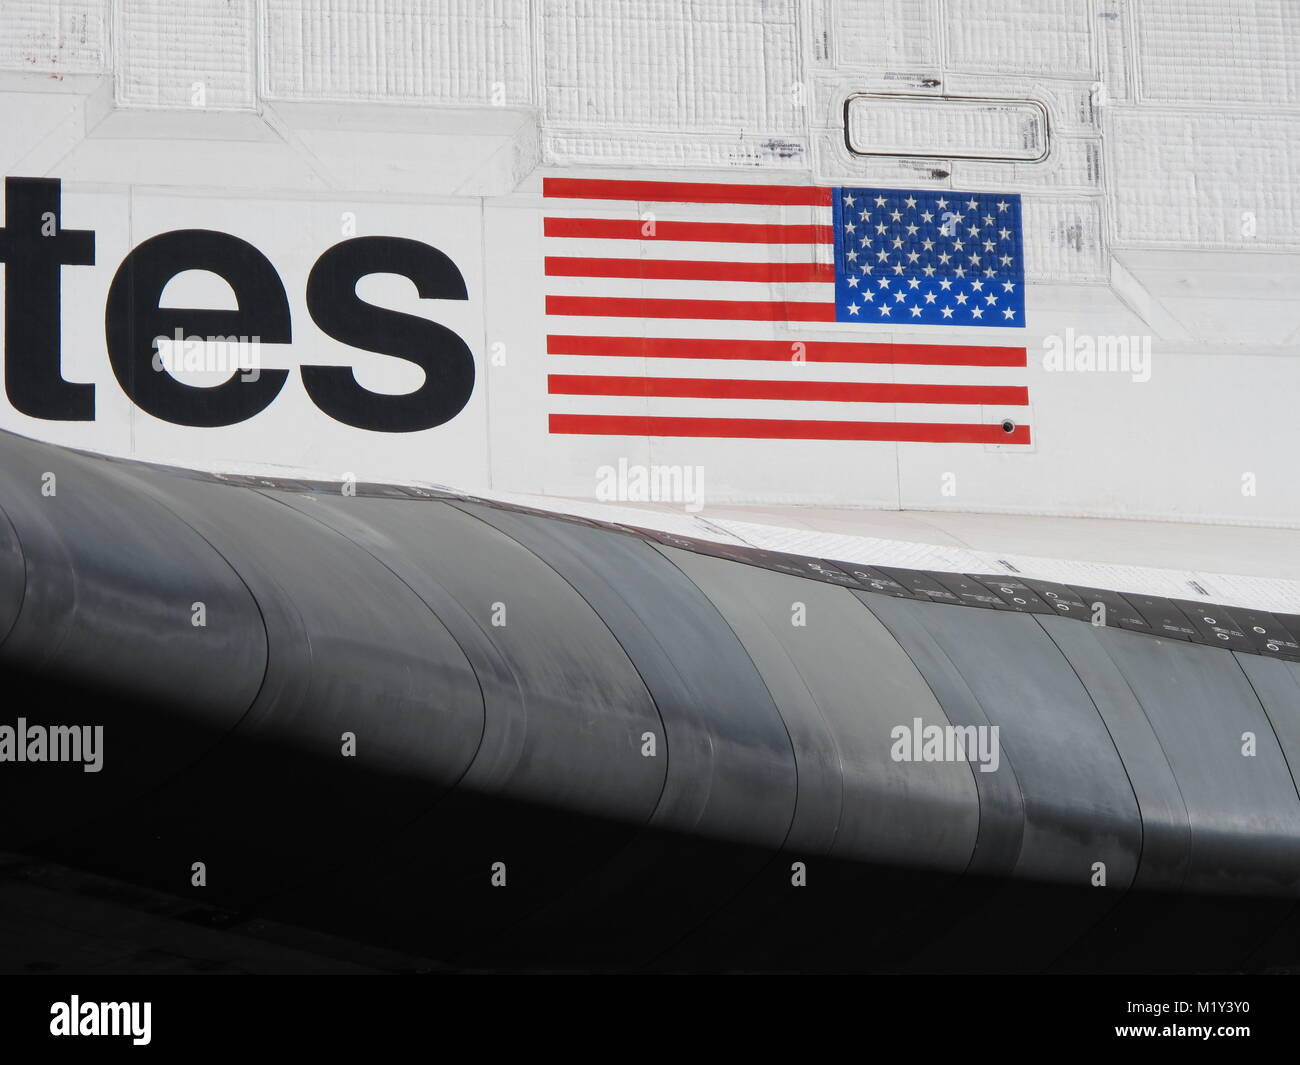 Los Angeles, CA - 13 octobre 2012 : Closeup détail de la NASA en matière d'aile de la navette spatiale Endeavour et le corps pendant la parade de la retraite pour l'engin spatial. Banque D'Images